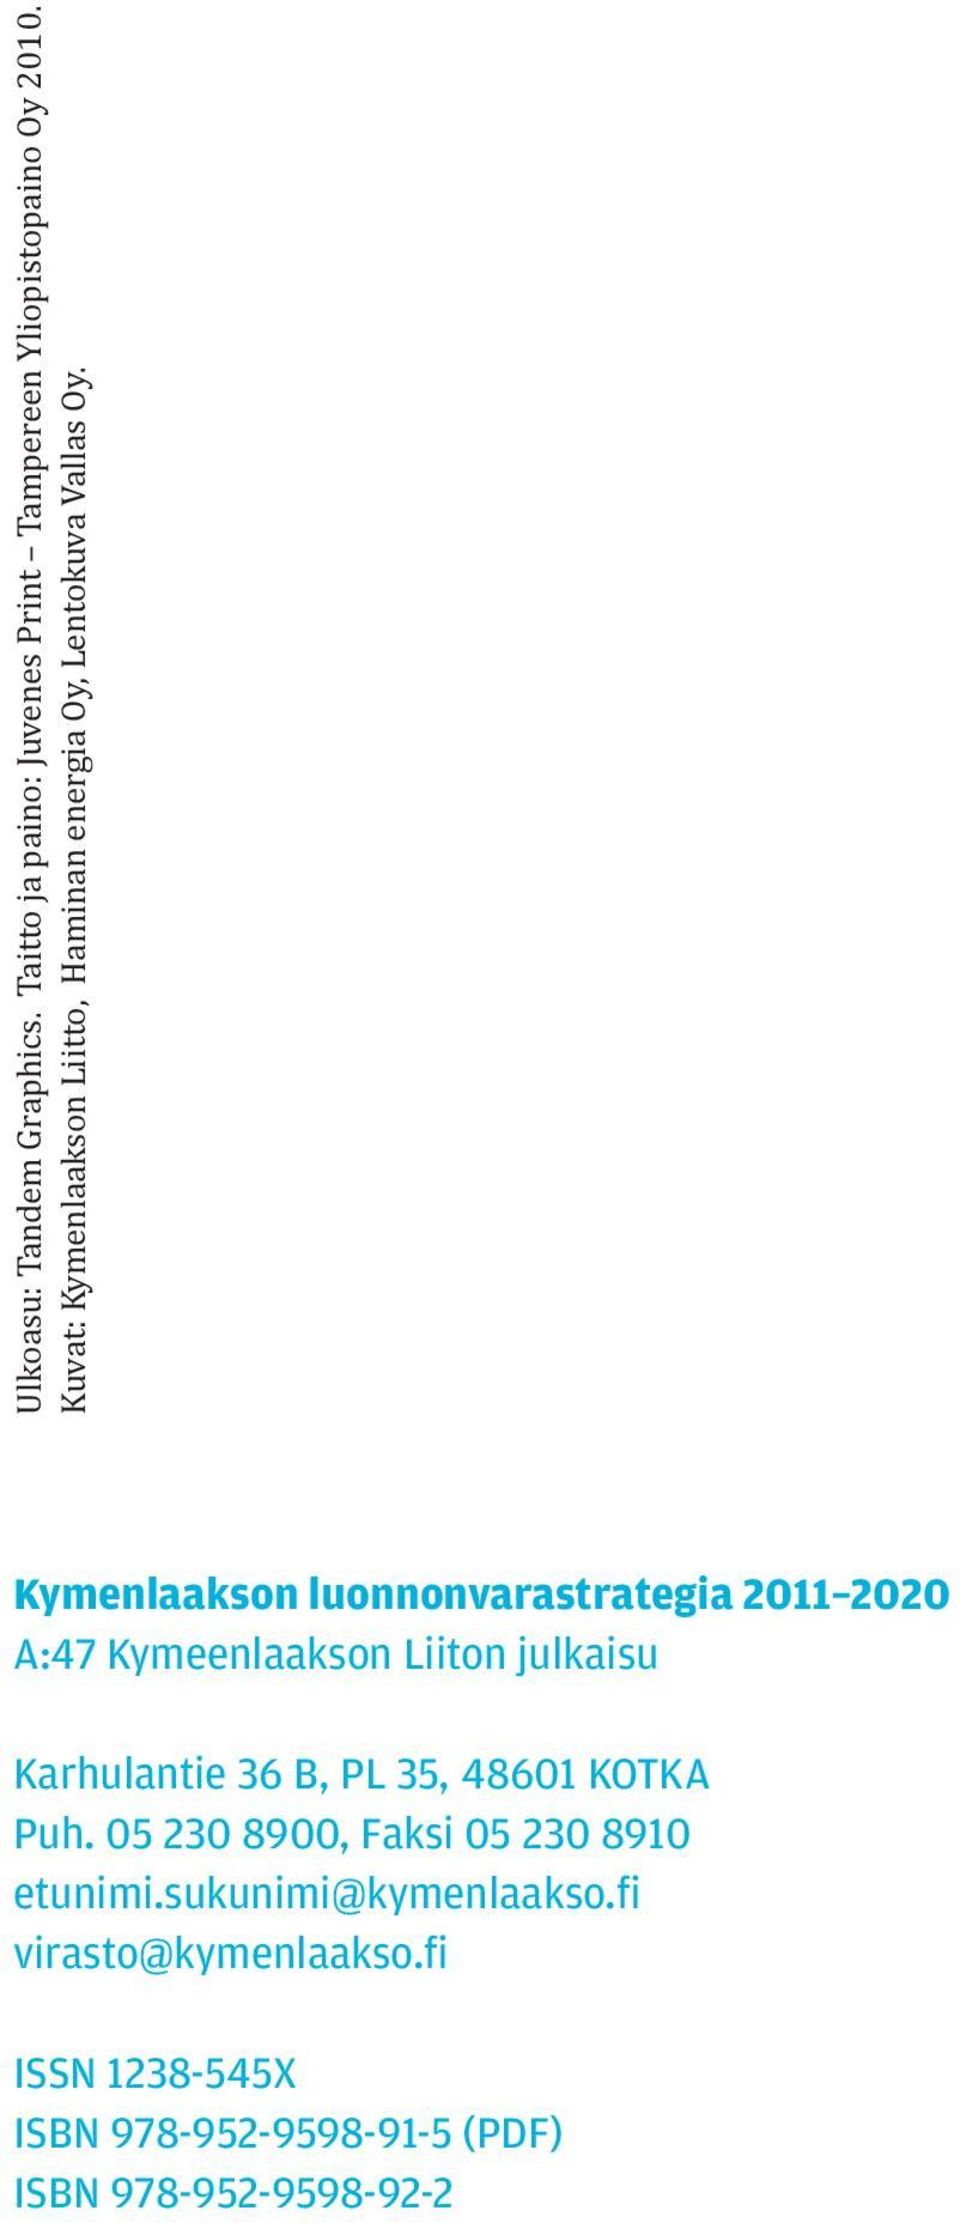 Kymenlaakson luonnonvarastrategia 2011 2020 A:47 Kymeenlaakson Liiton julkaisu Karhulantie 36 B, PL 35,